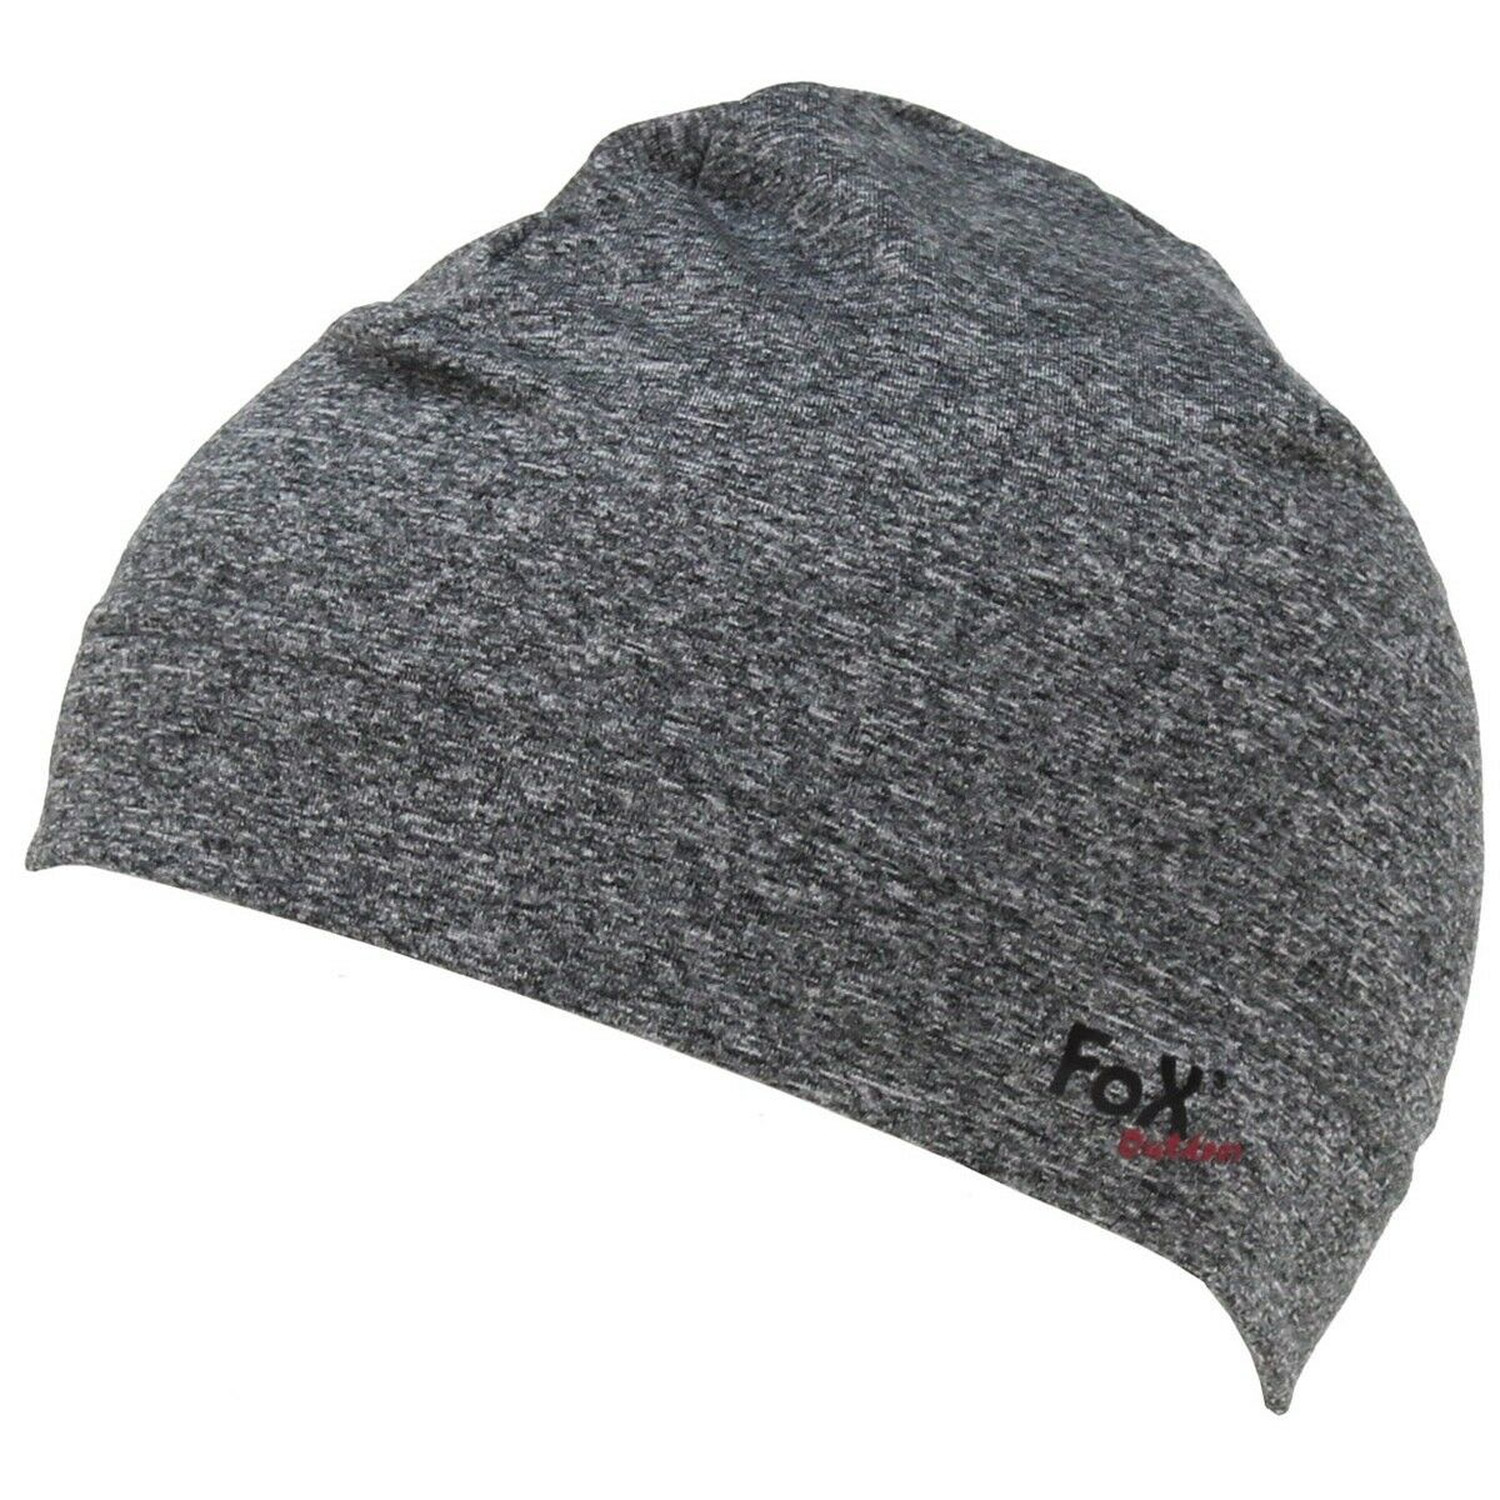 Mütze Run von FoX Outdoor in Grau, Größe L / XL